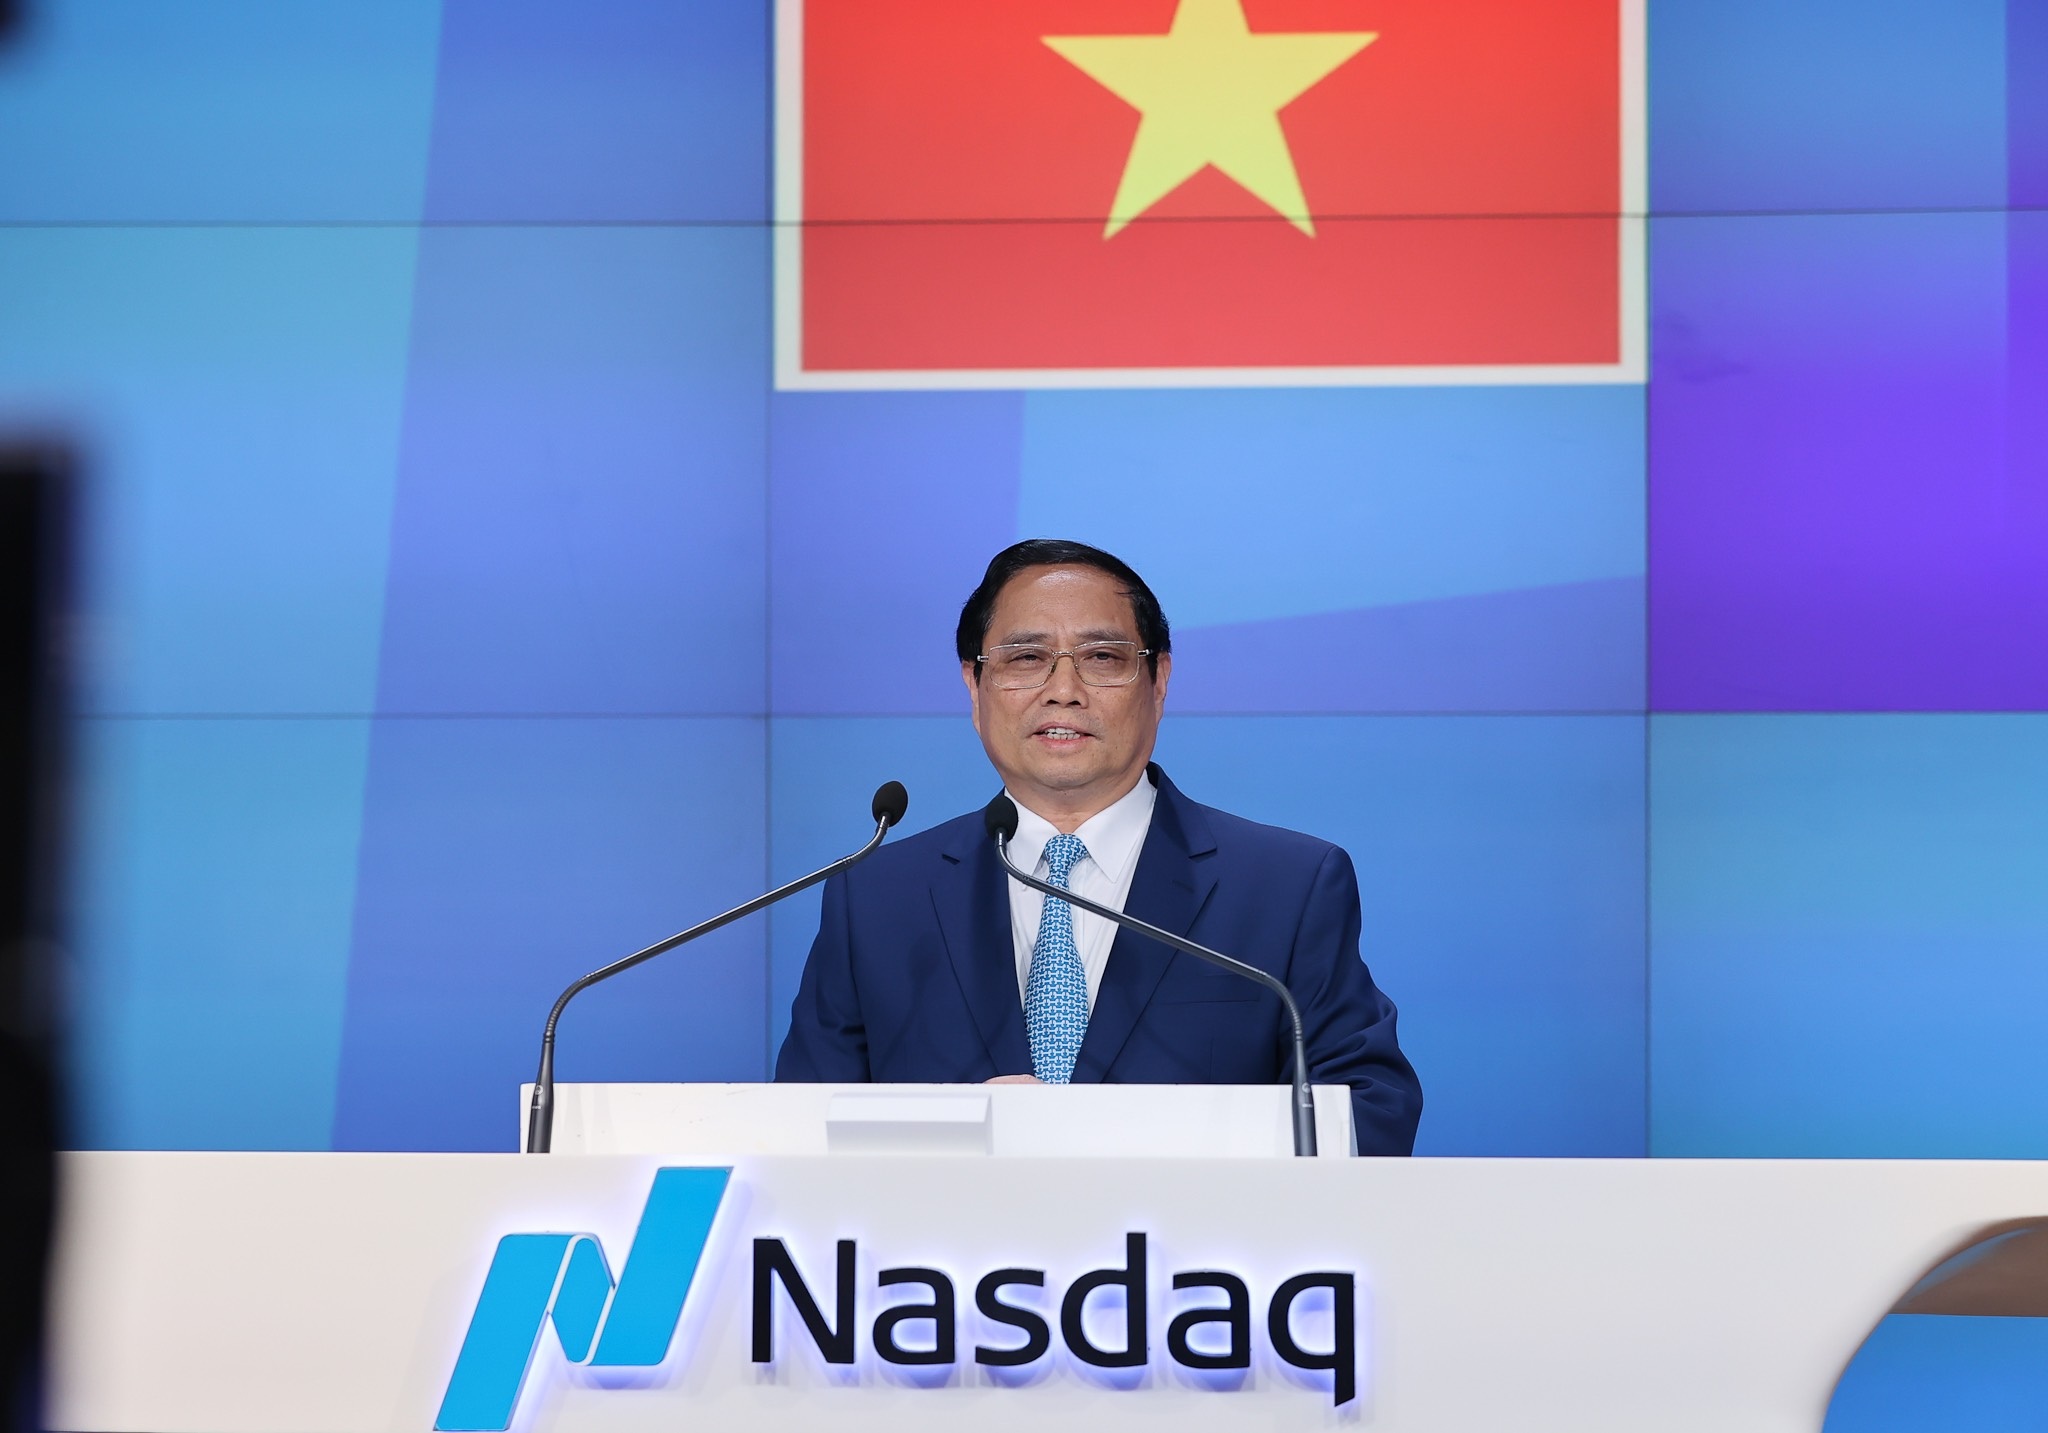 Thủ tướng rung chuông sàn chứng khoán NASDAQ - nơi Vinfast vừa niêm yết - 5